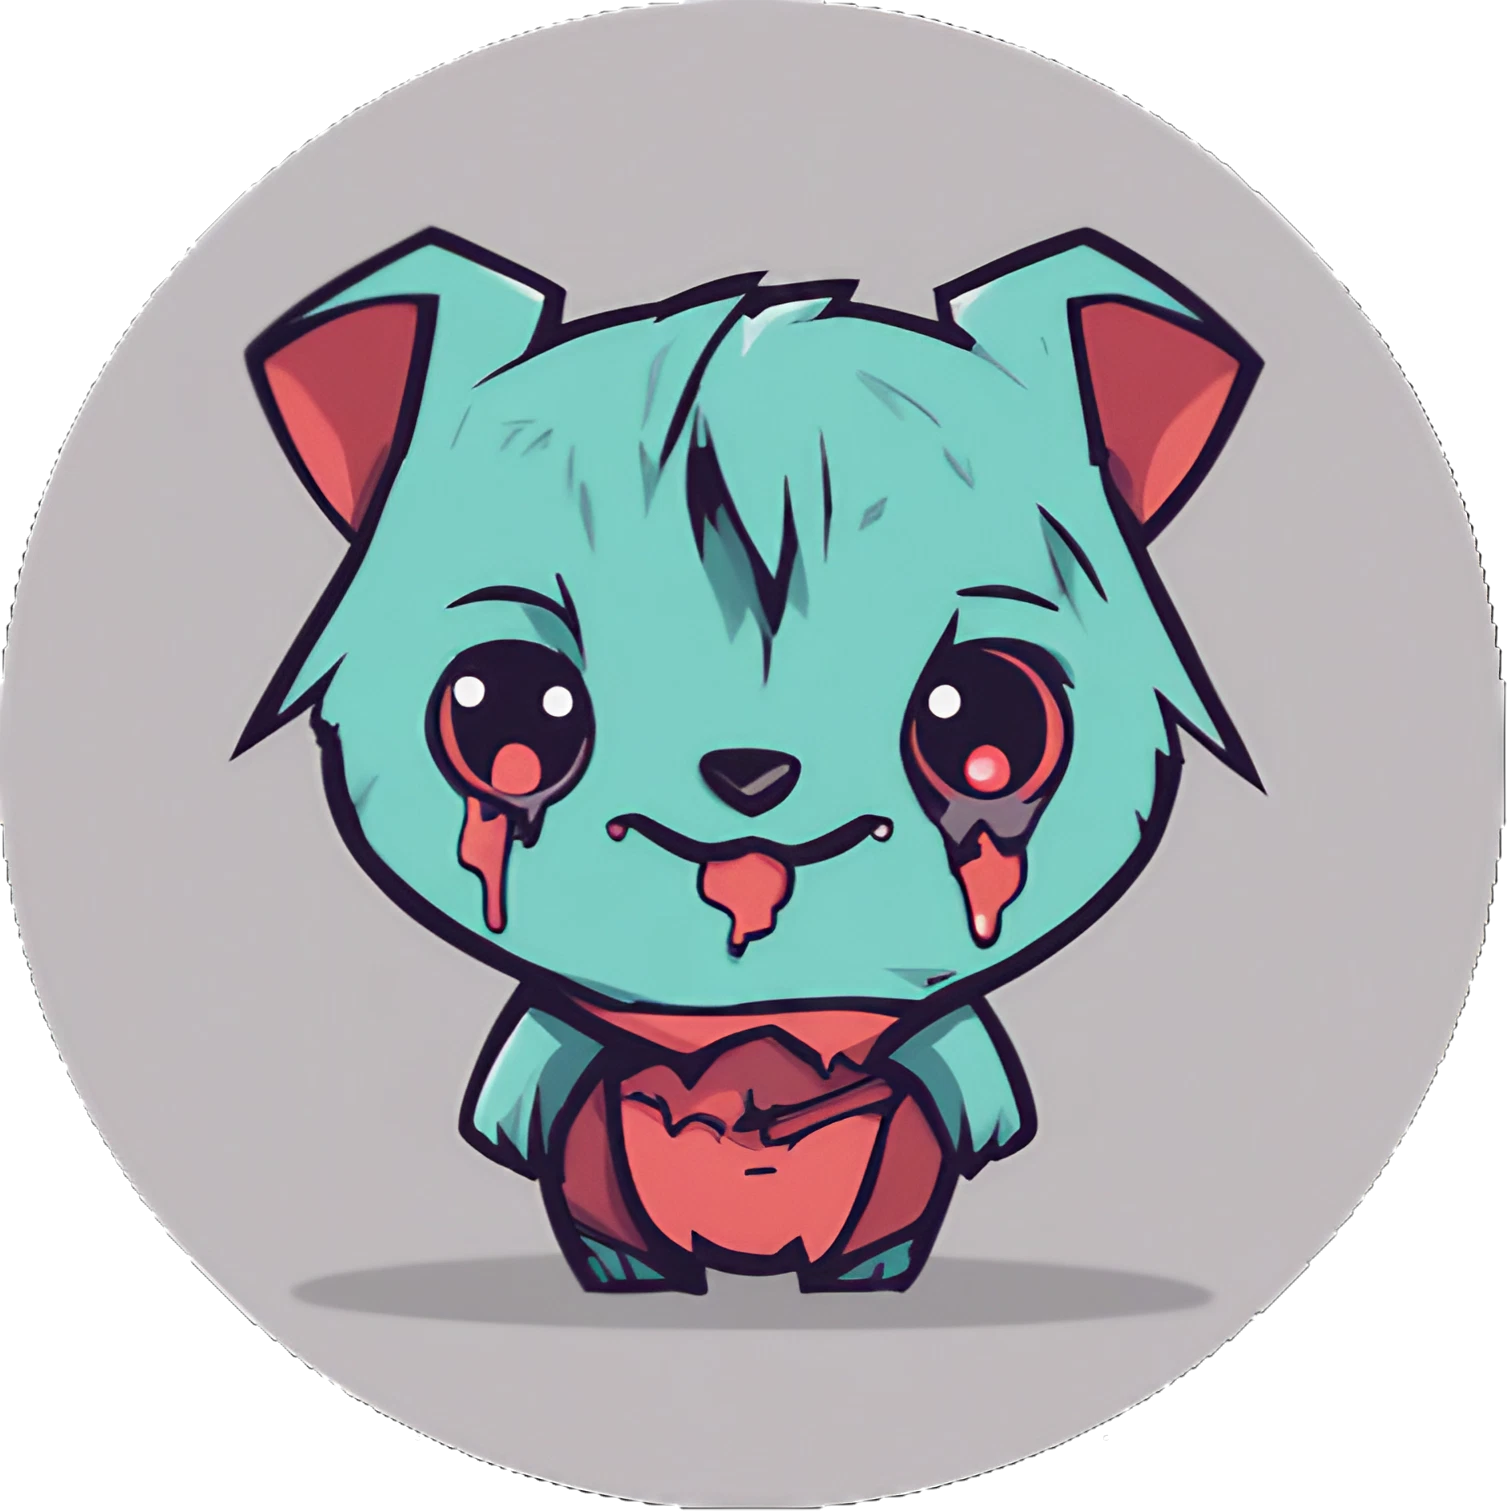 Chibi Zombie Wombat - Sticker - 3x3cm